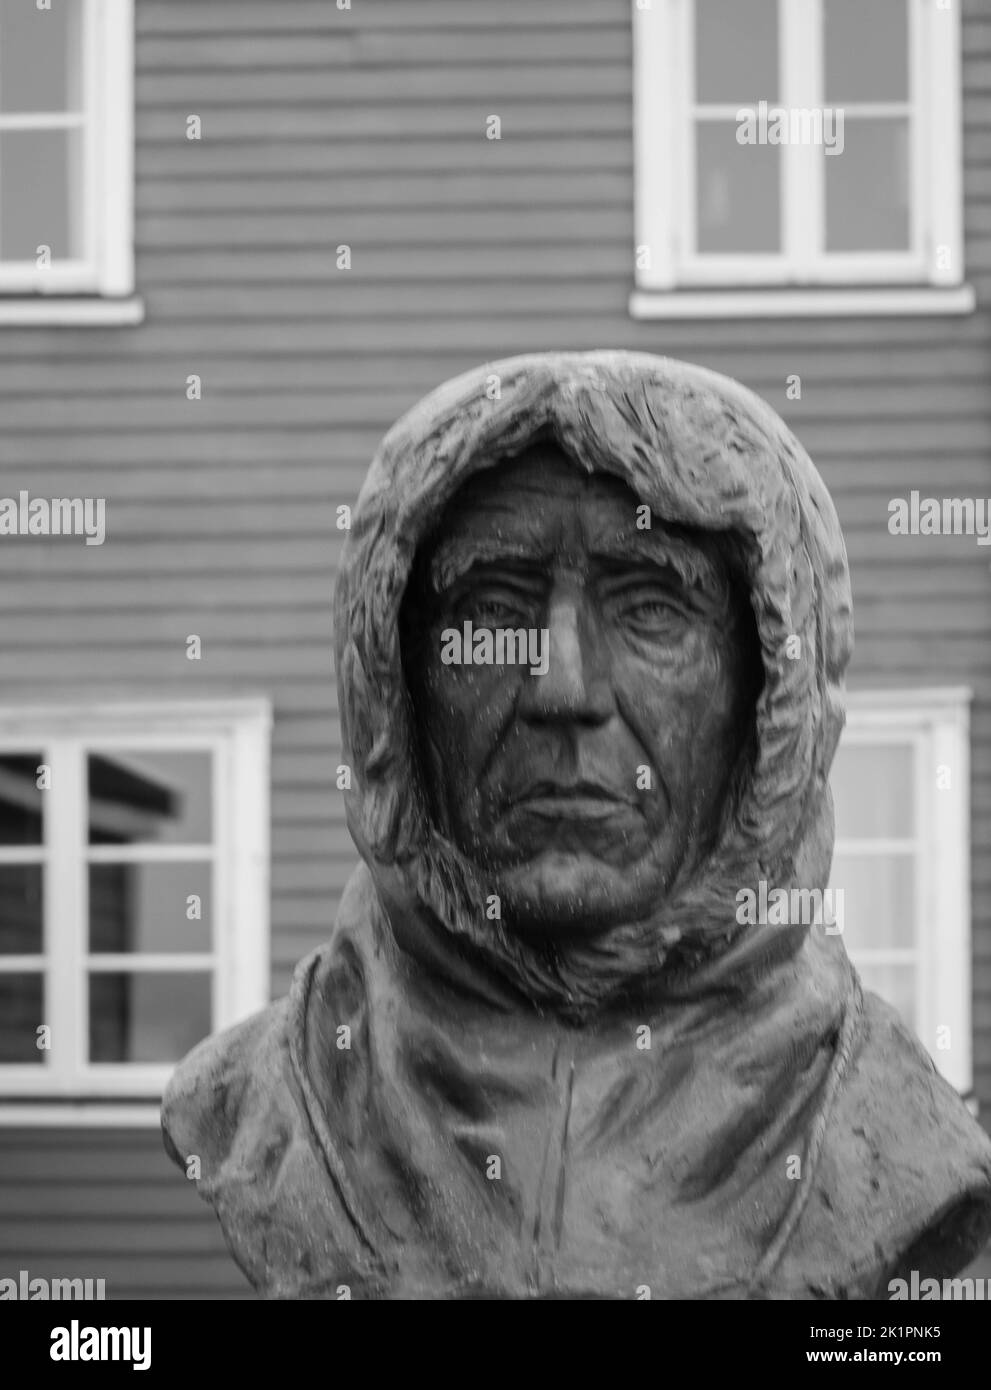 Eine Büste von Roald Amundsen im Zentrum von NY Alesund. Amundsen war der erste Mann, der 1911 den Südpol erreichte. Spitzbergen, Norwegen. 25. Juli 2022 Stockfoto